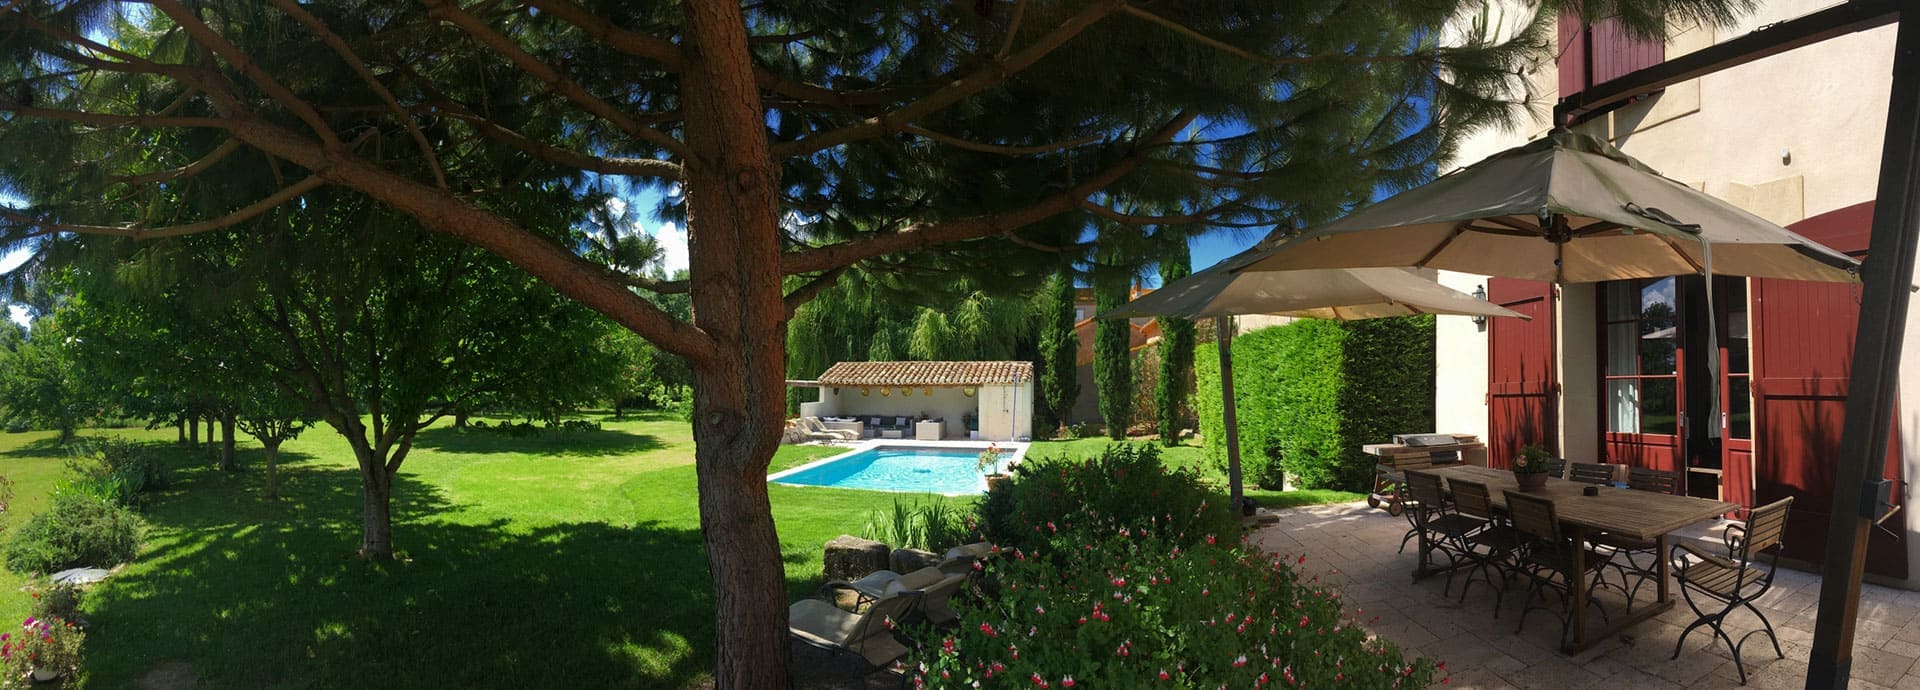 Het terras en het zwembad van vakantiehuis Silène op Domaine de la Vernède, chambres d’hôtes in de Hérault.